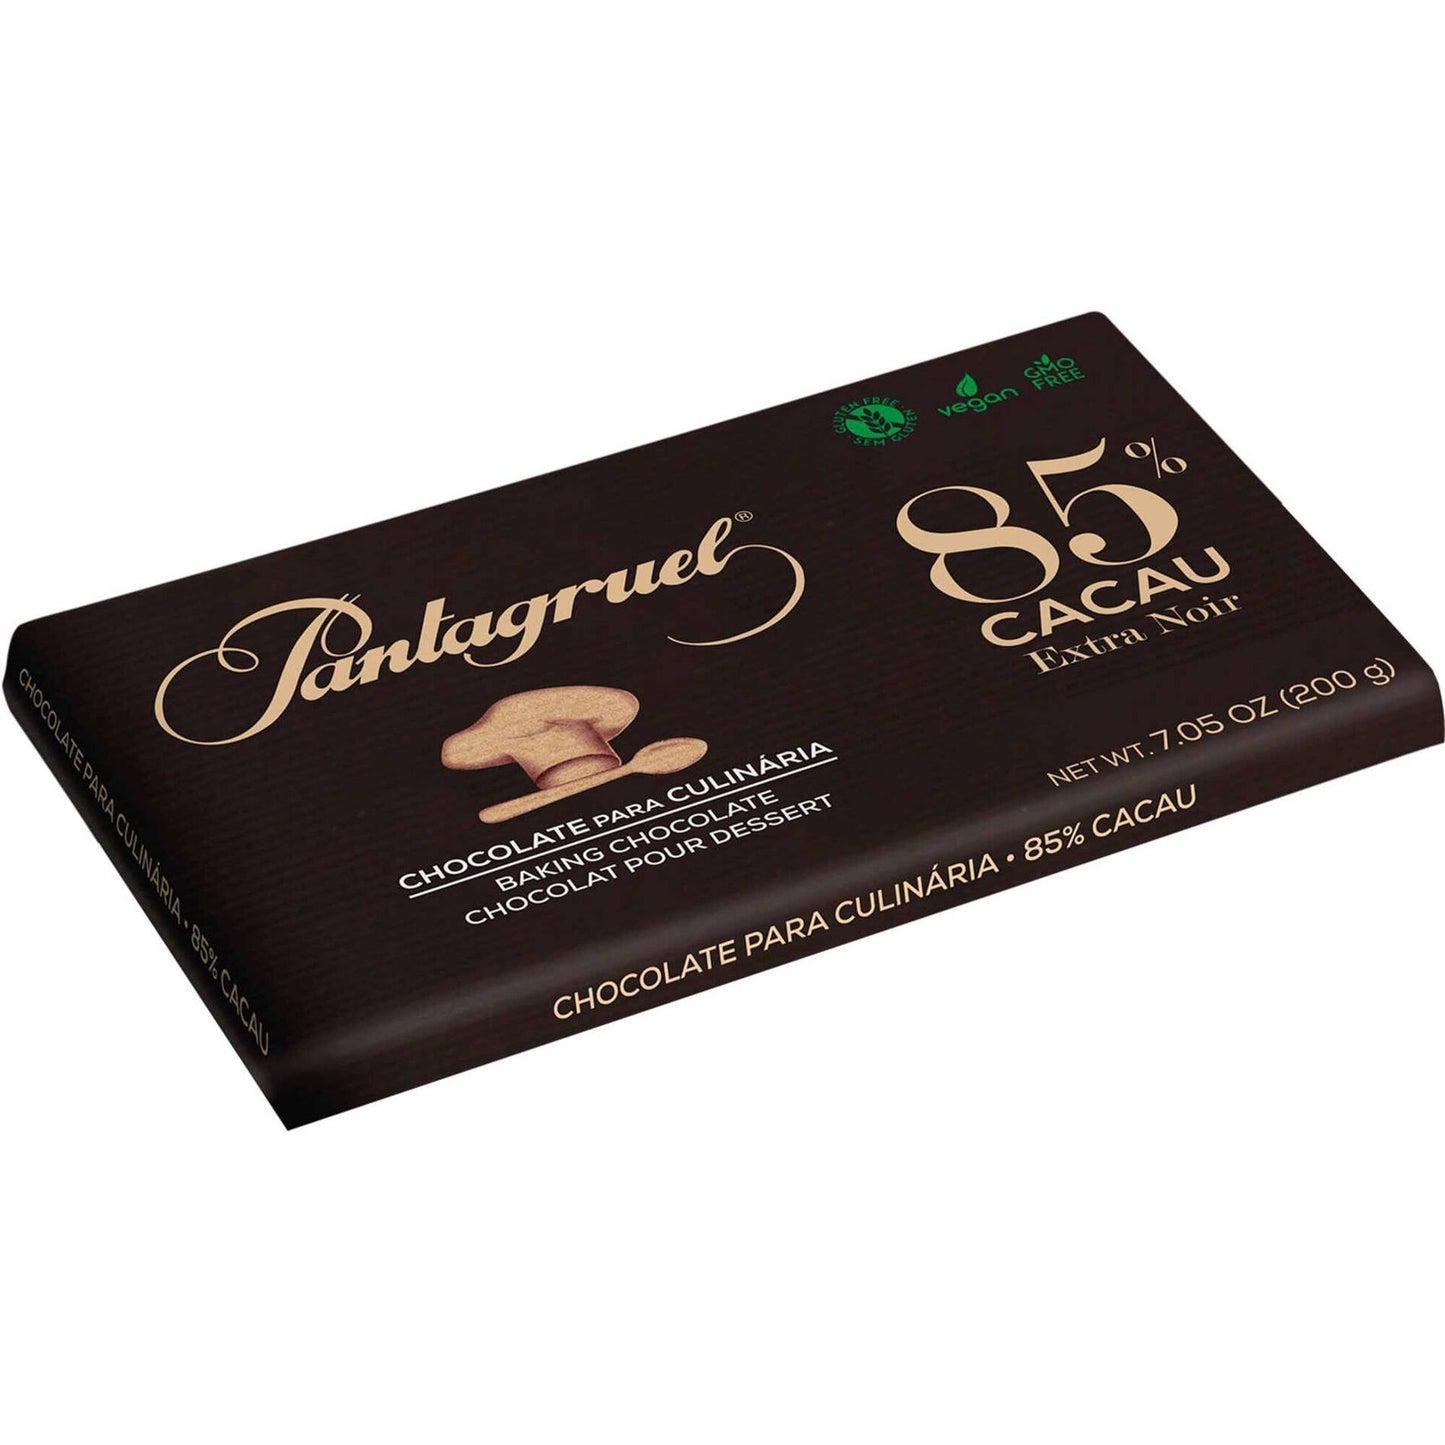 Tablete de chocolate culinário 85% sem glúten Pantagruel emb. 200 gramas